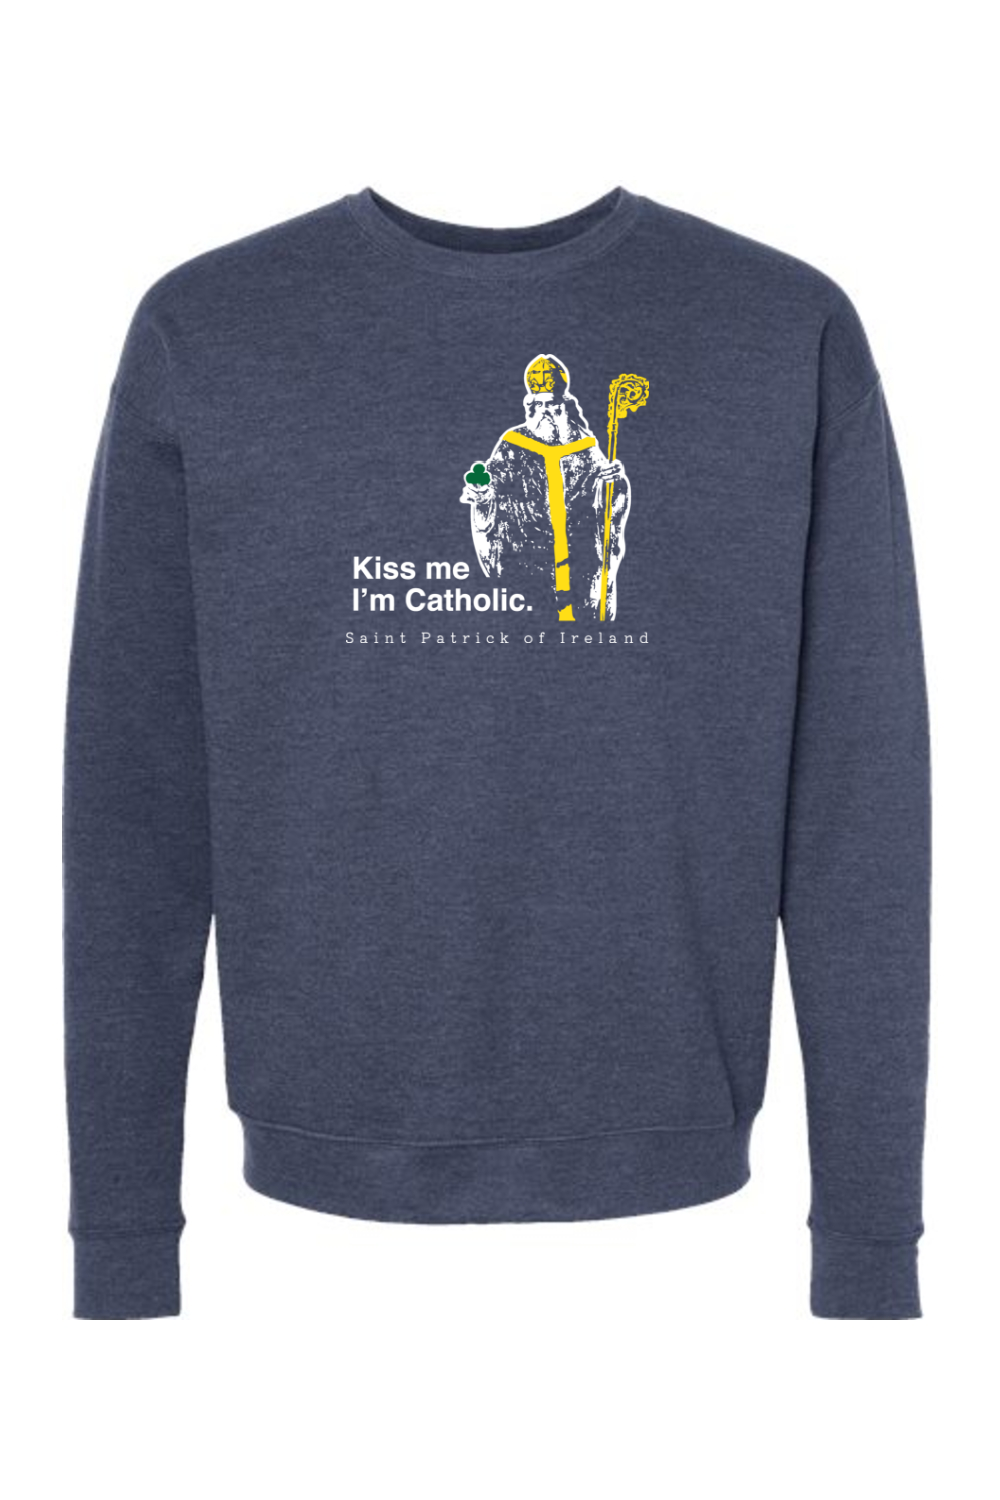 Kiss Me, I'm Catholic - St. Patrick of Ireland Crewneck Sweatshirt